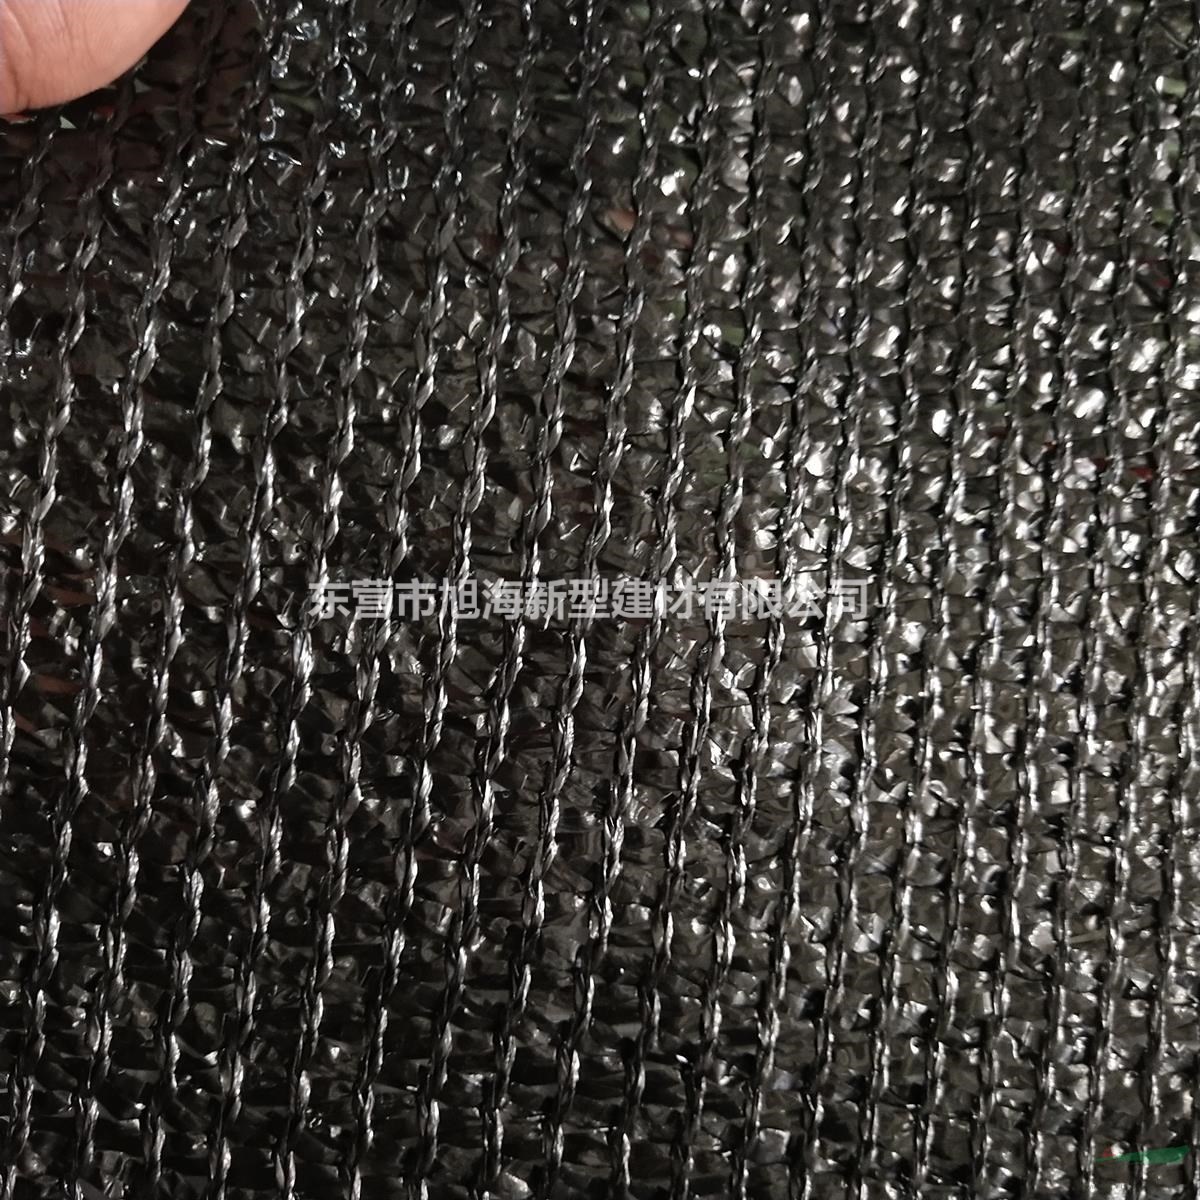 旭海黑色遮阳网生产厂家   3针加密遮阳网遮阳率95%